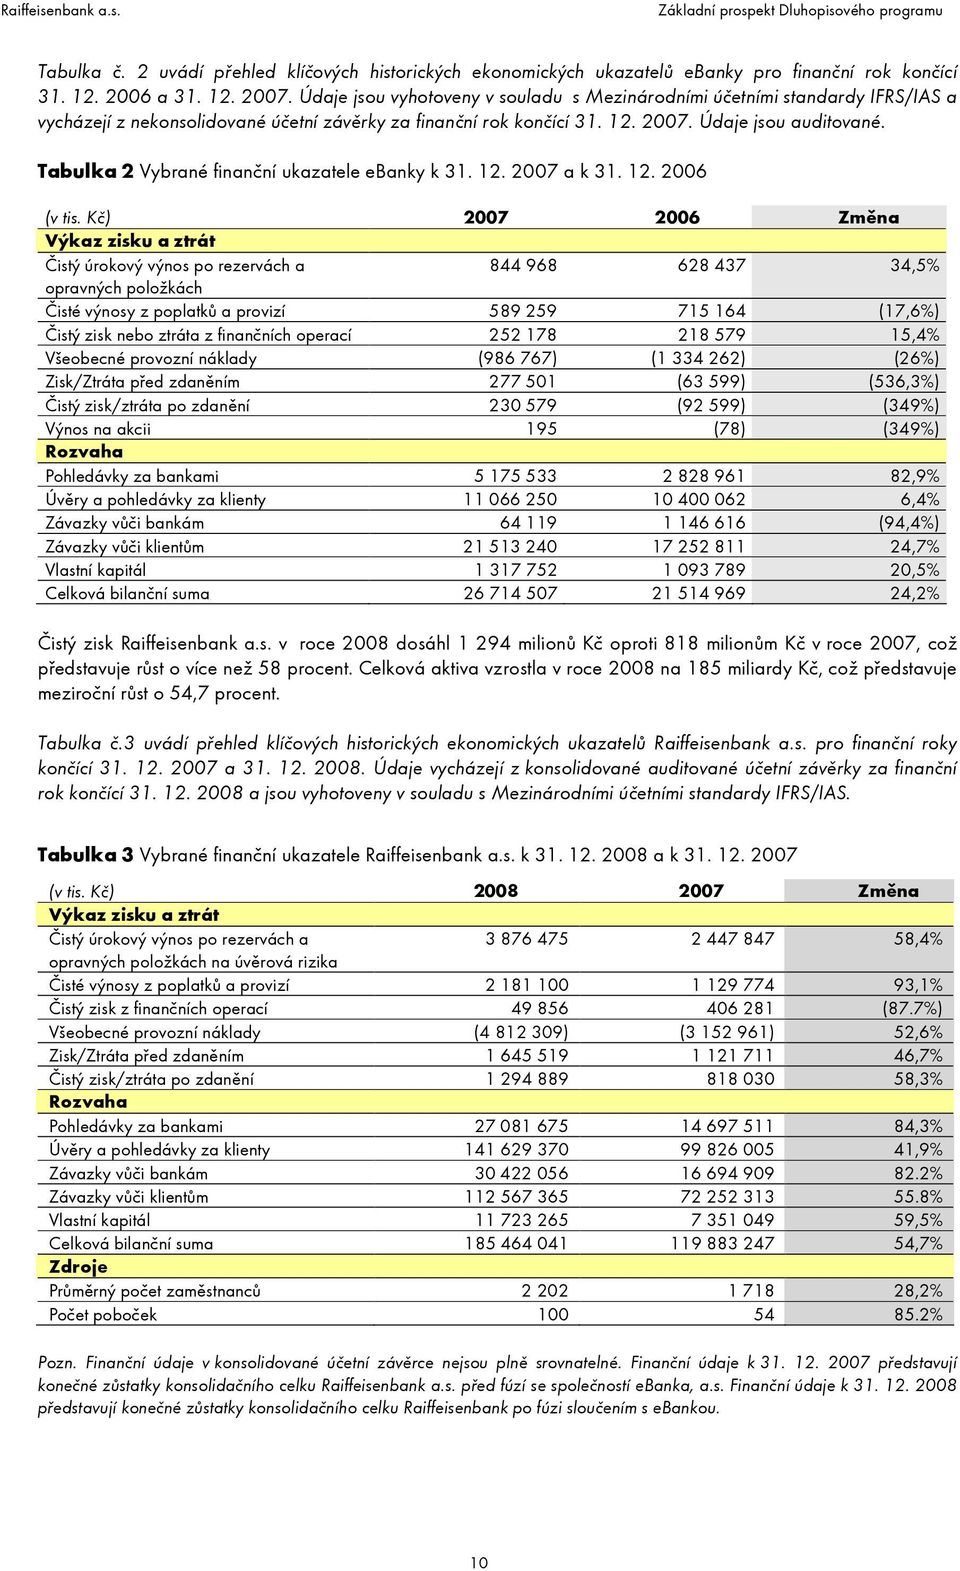 Tabulka 2 Vybrané finanční ukazatele ebanky k 31. 12. 2007 a k 31. 12. 2006 (v tis.